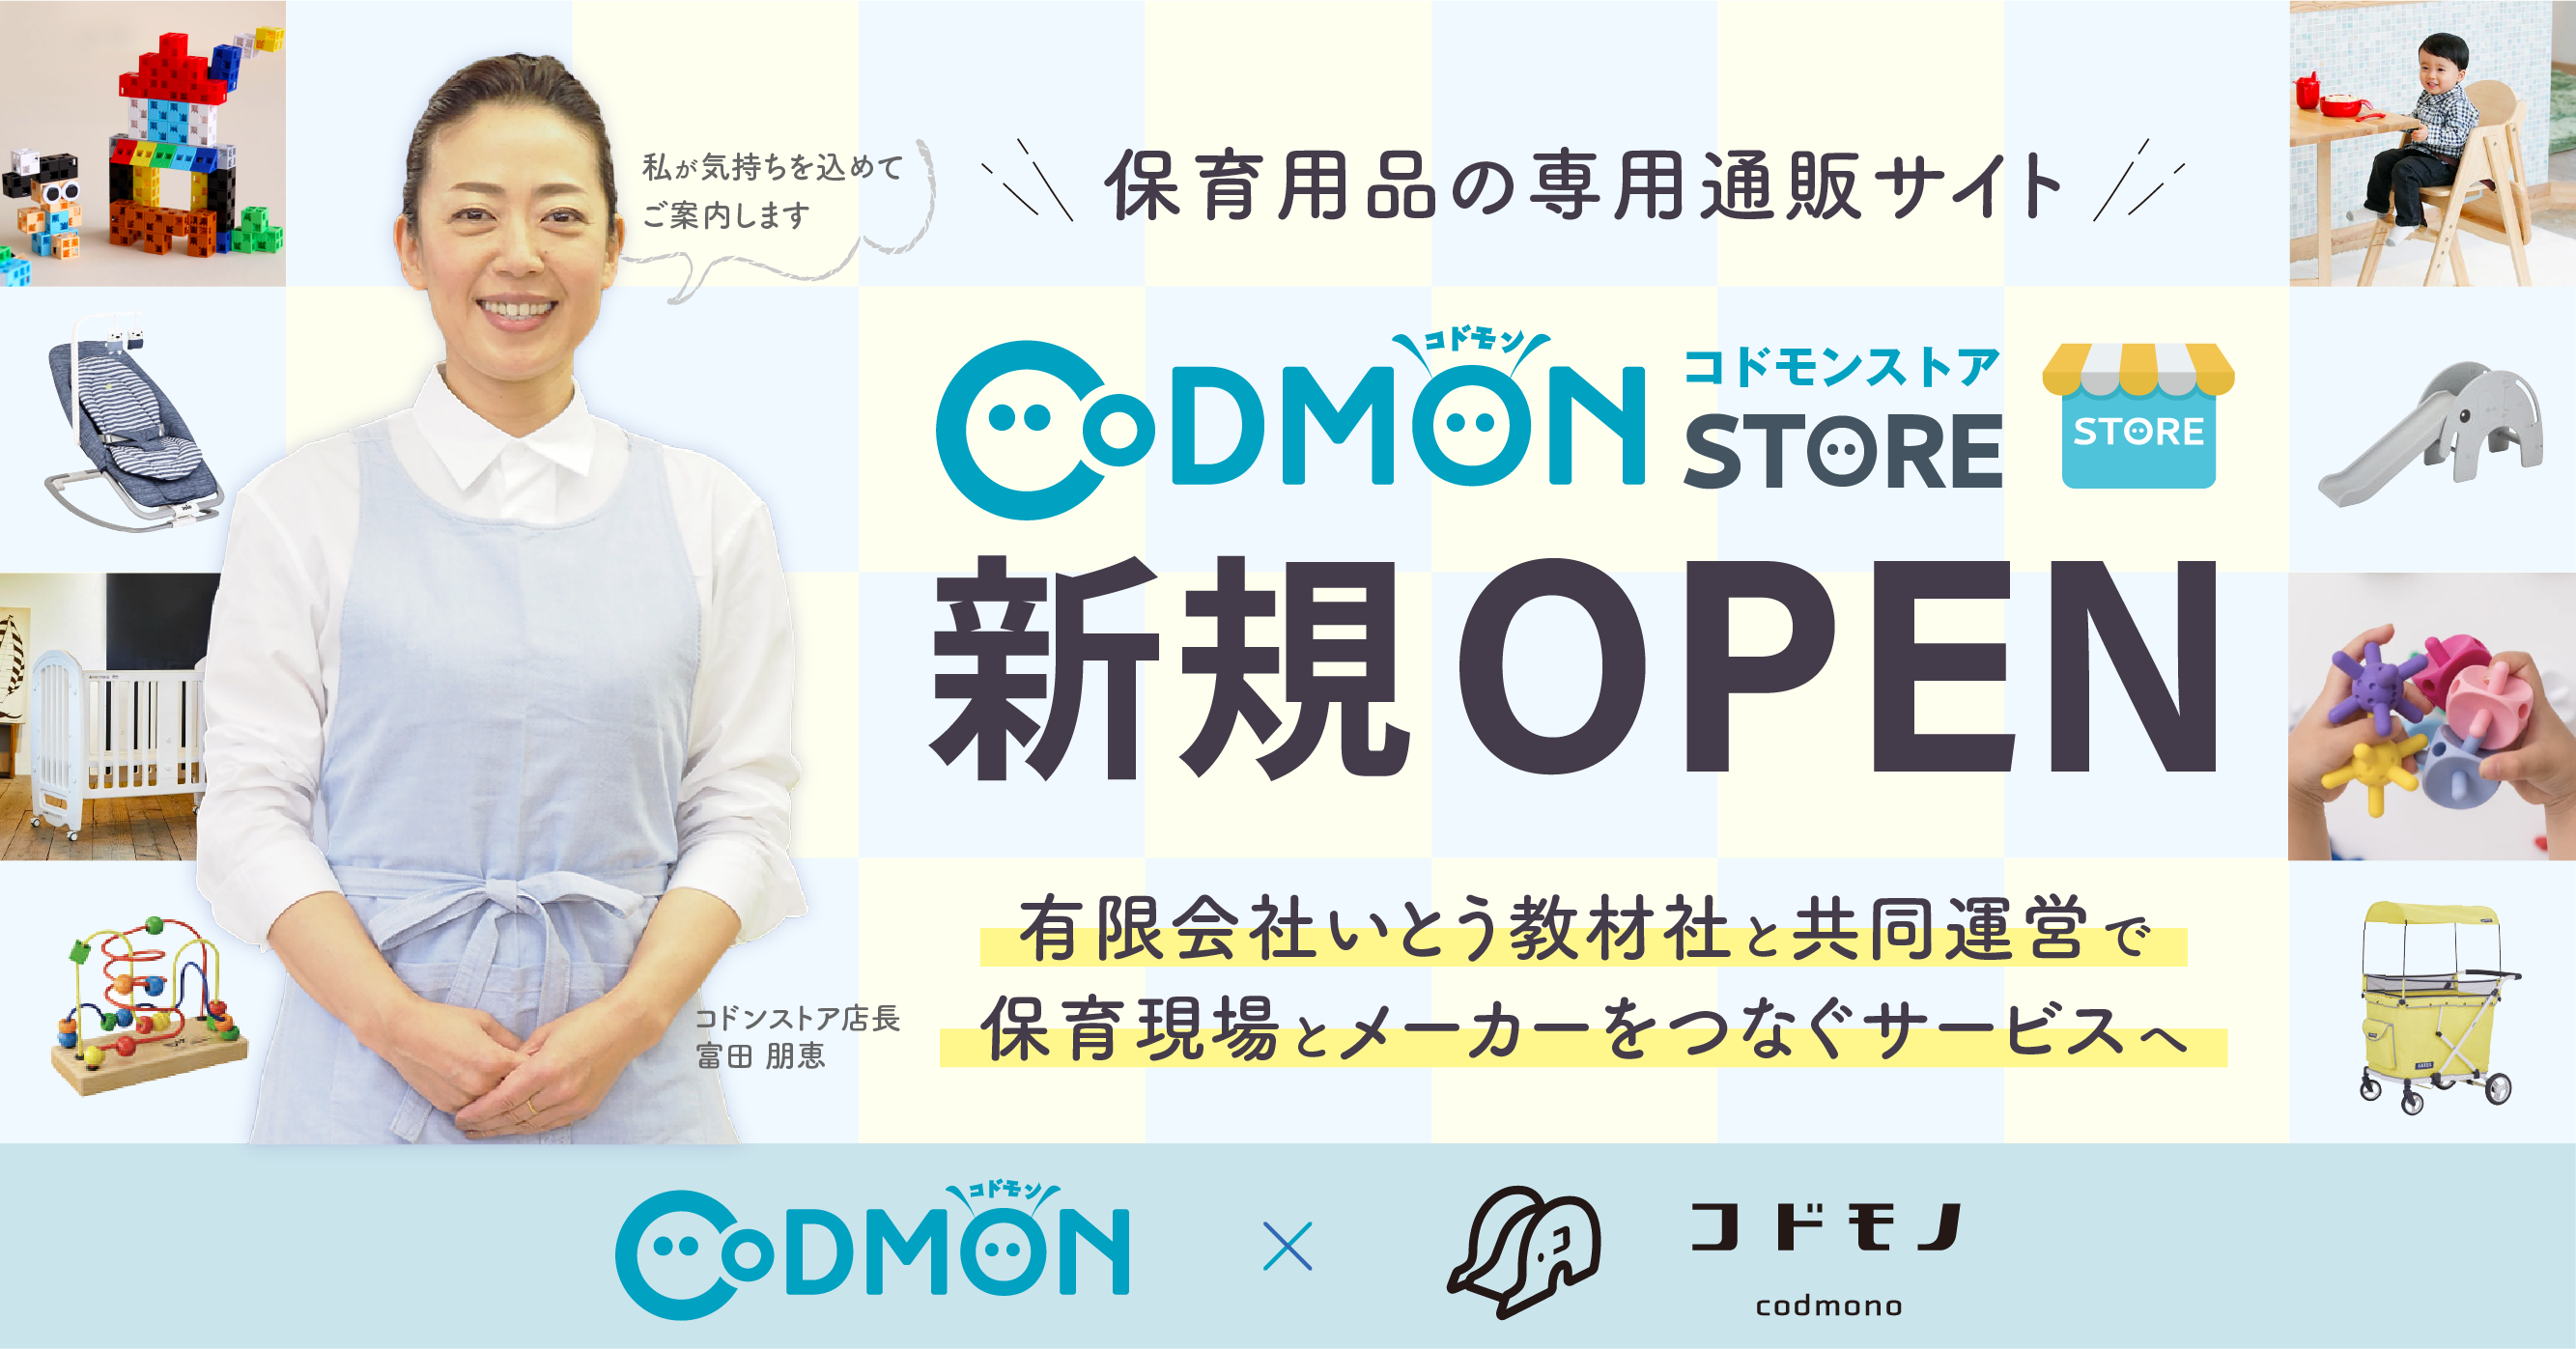 株式会社コドモン、保育用品の専用ECサイト 「コドモンストア」をオープン